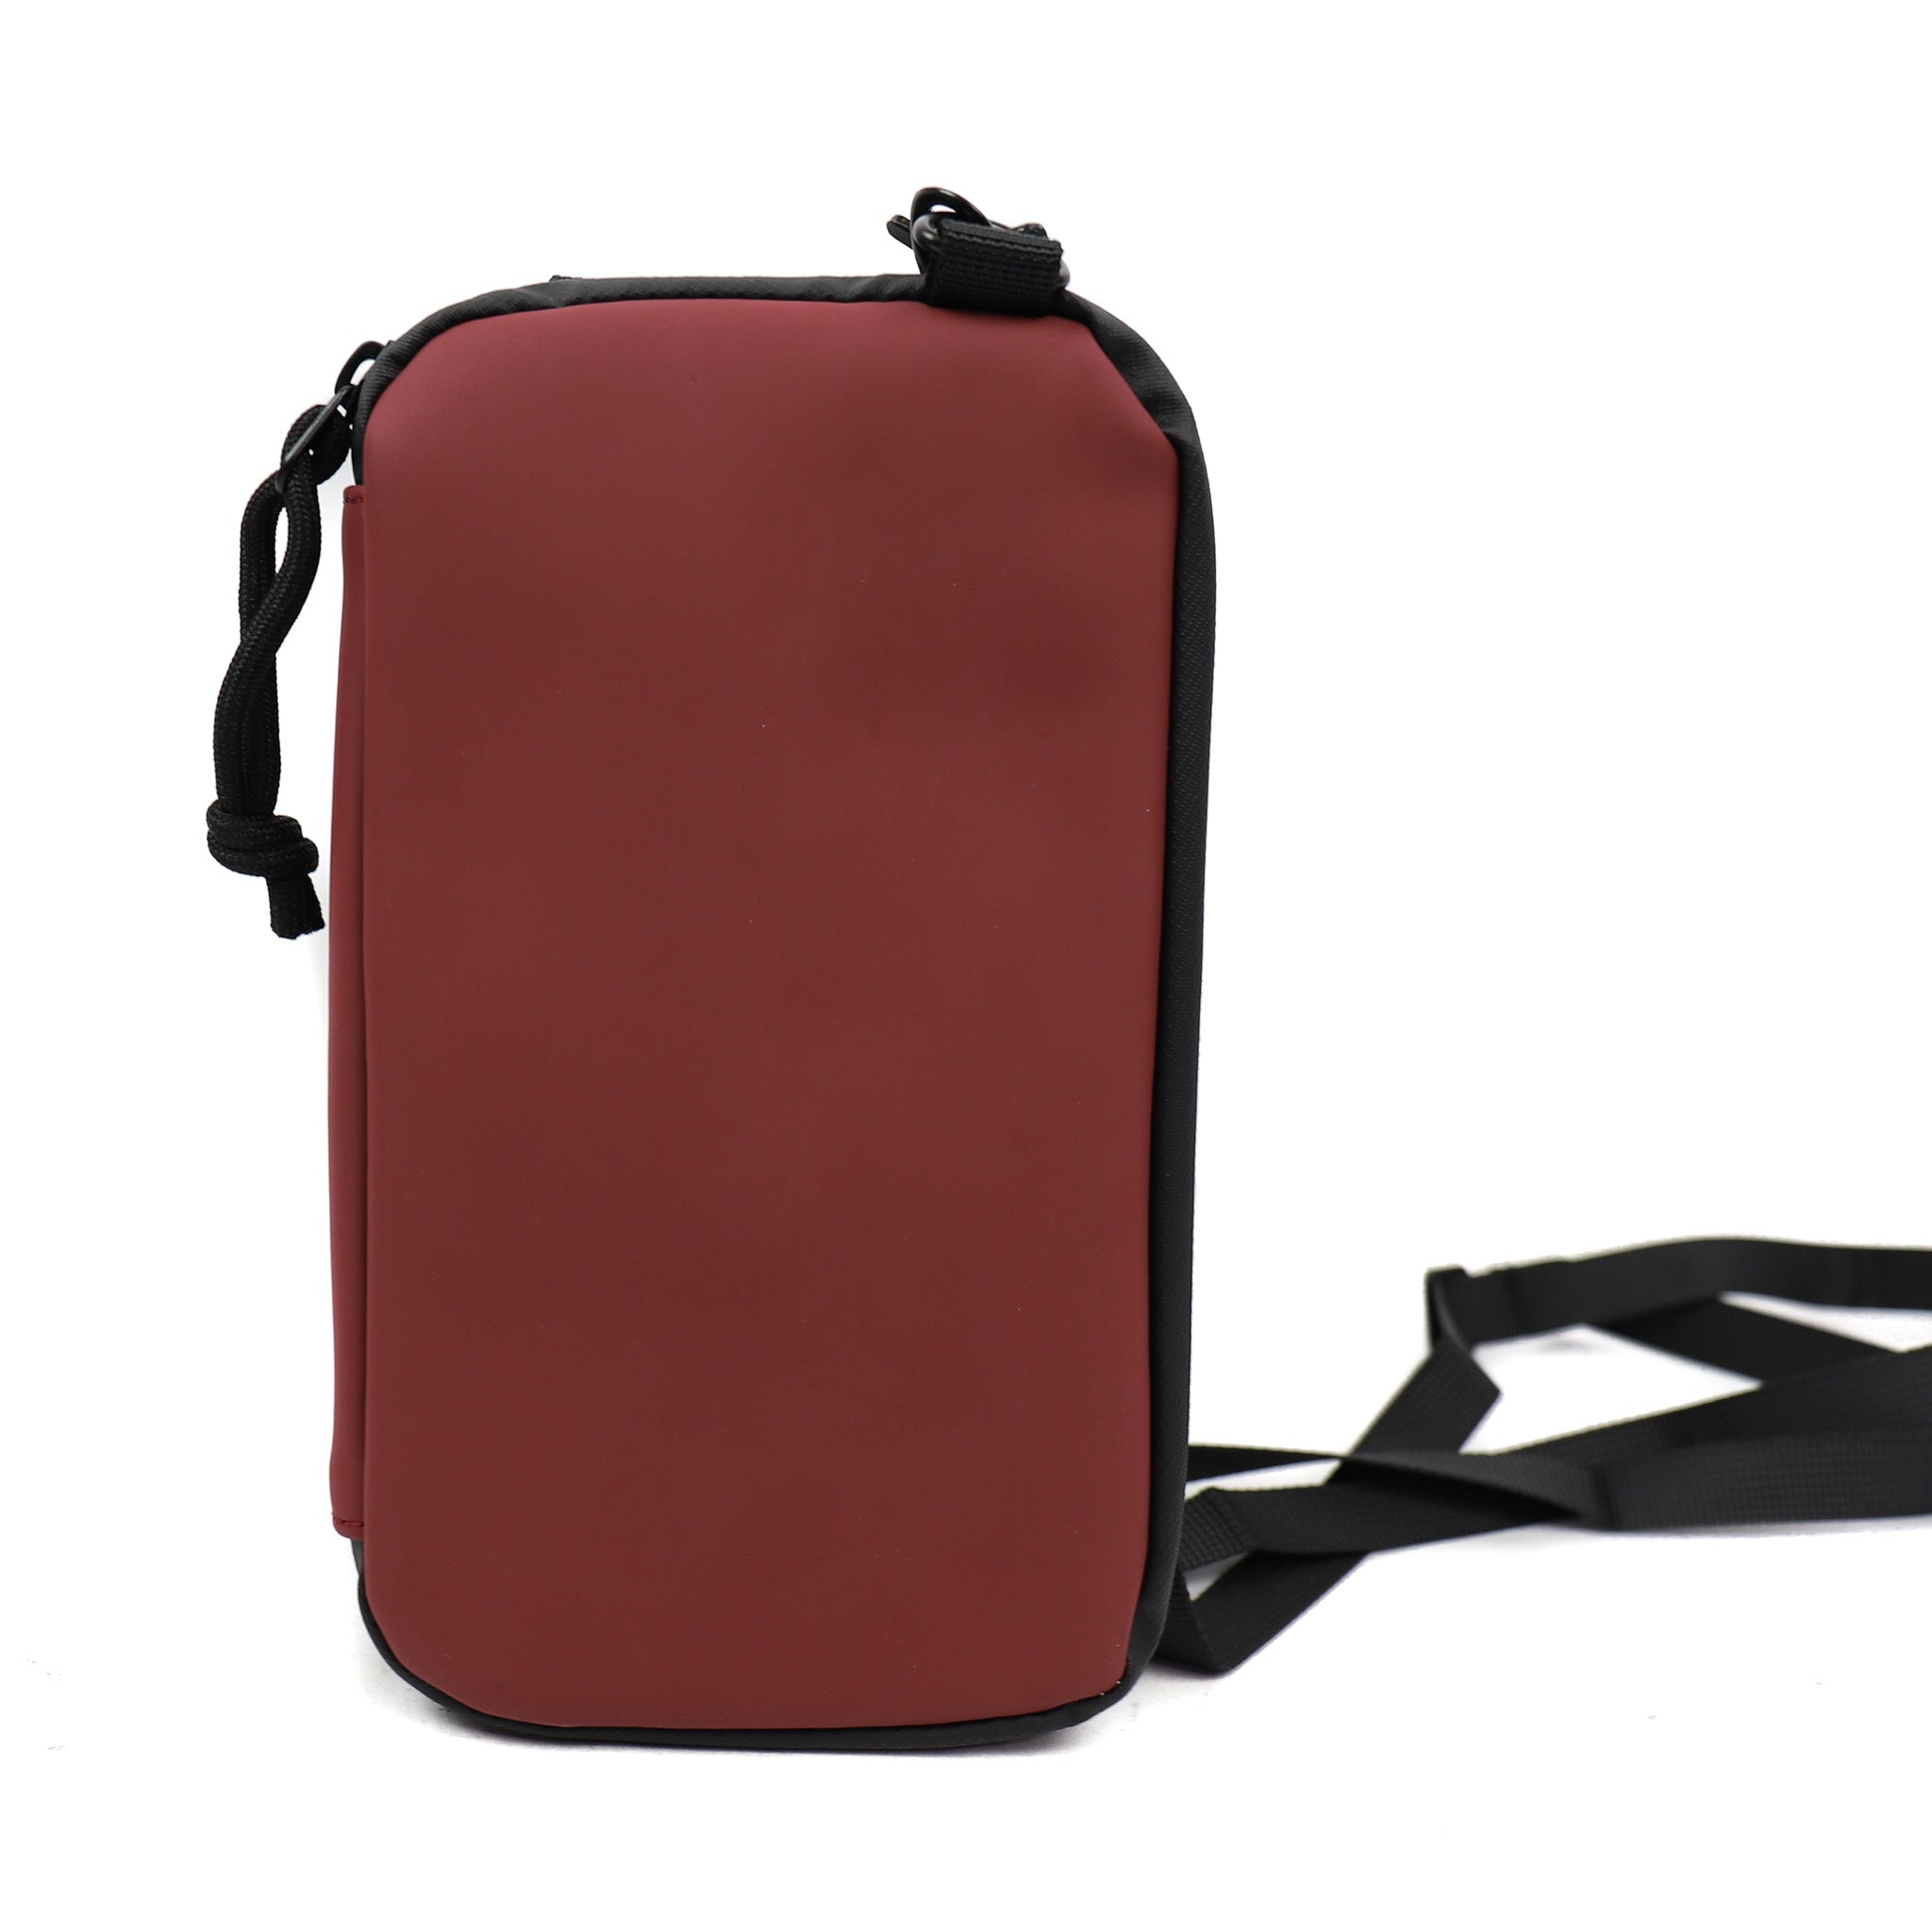 Phone bag 'Mart' burgundy